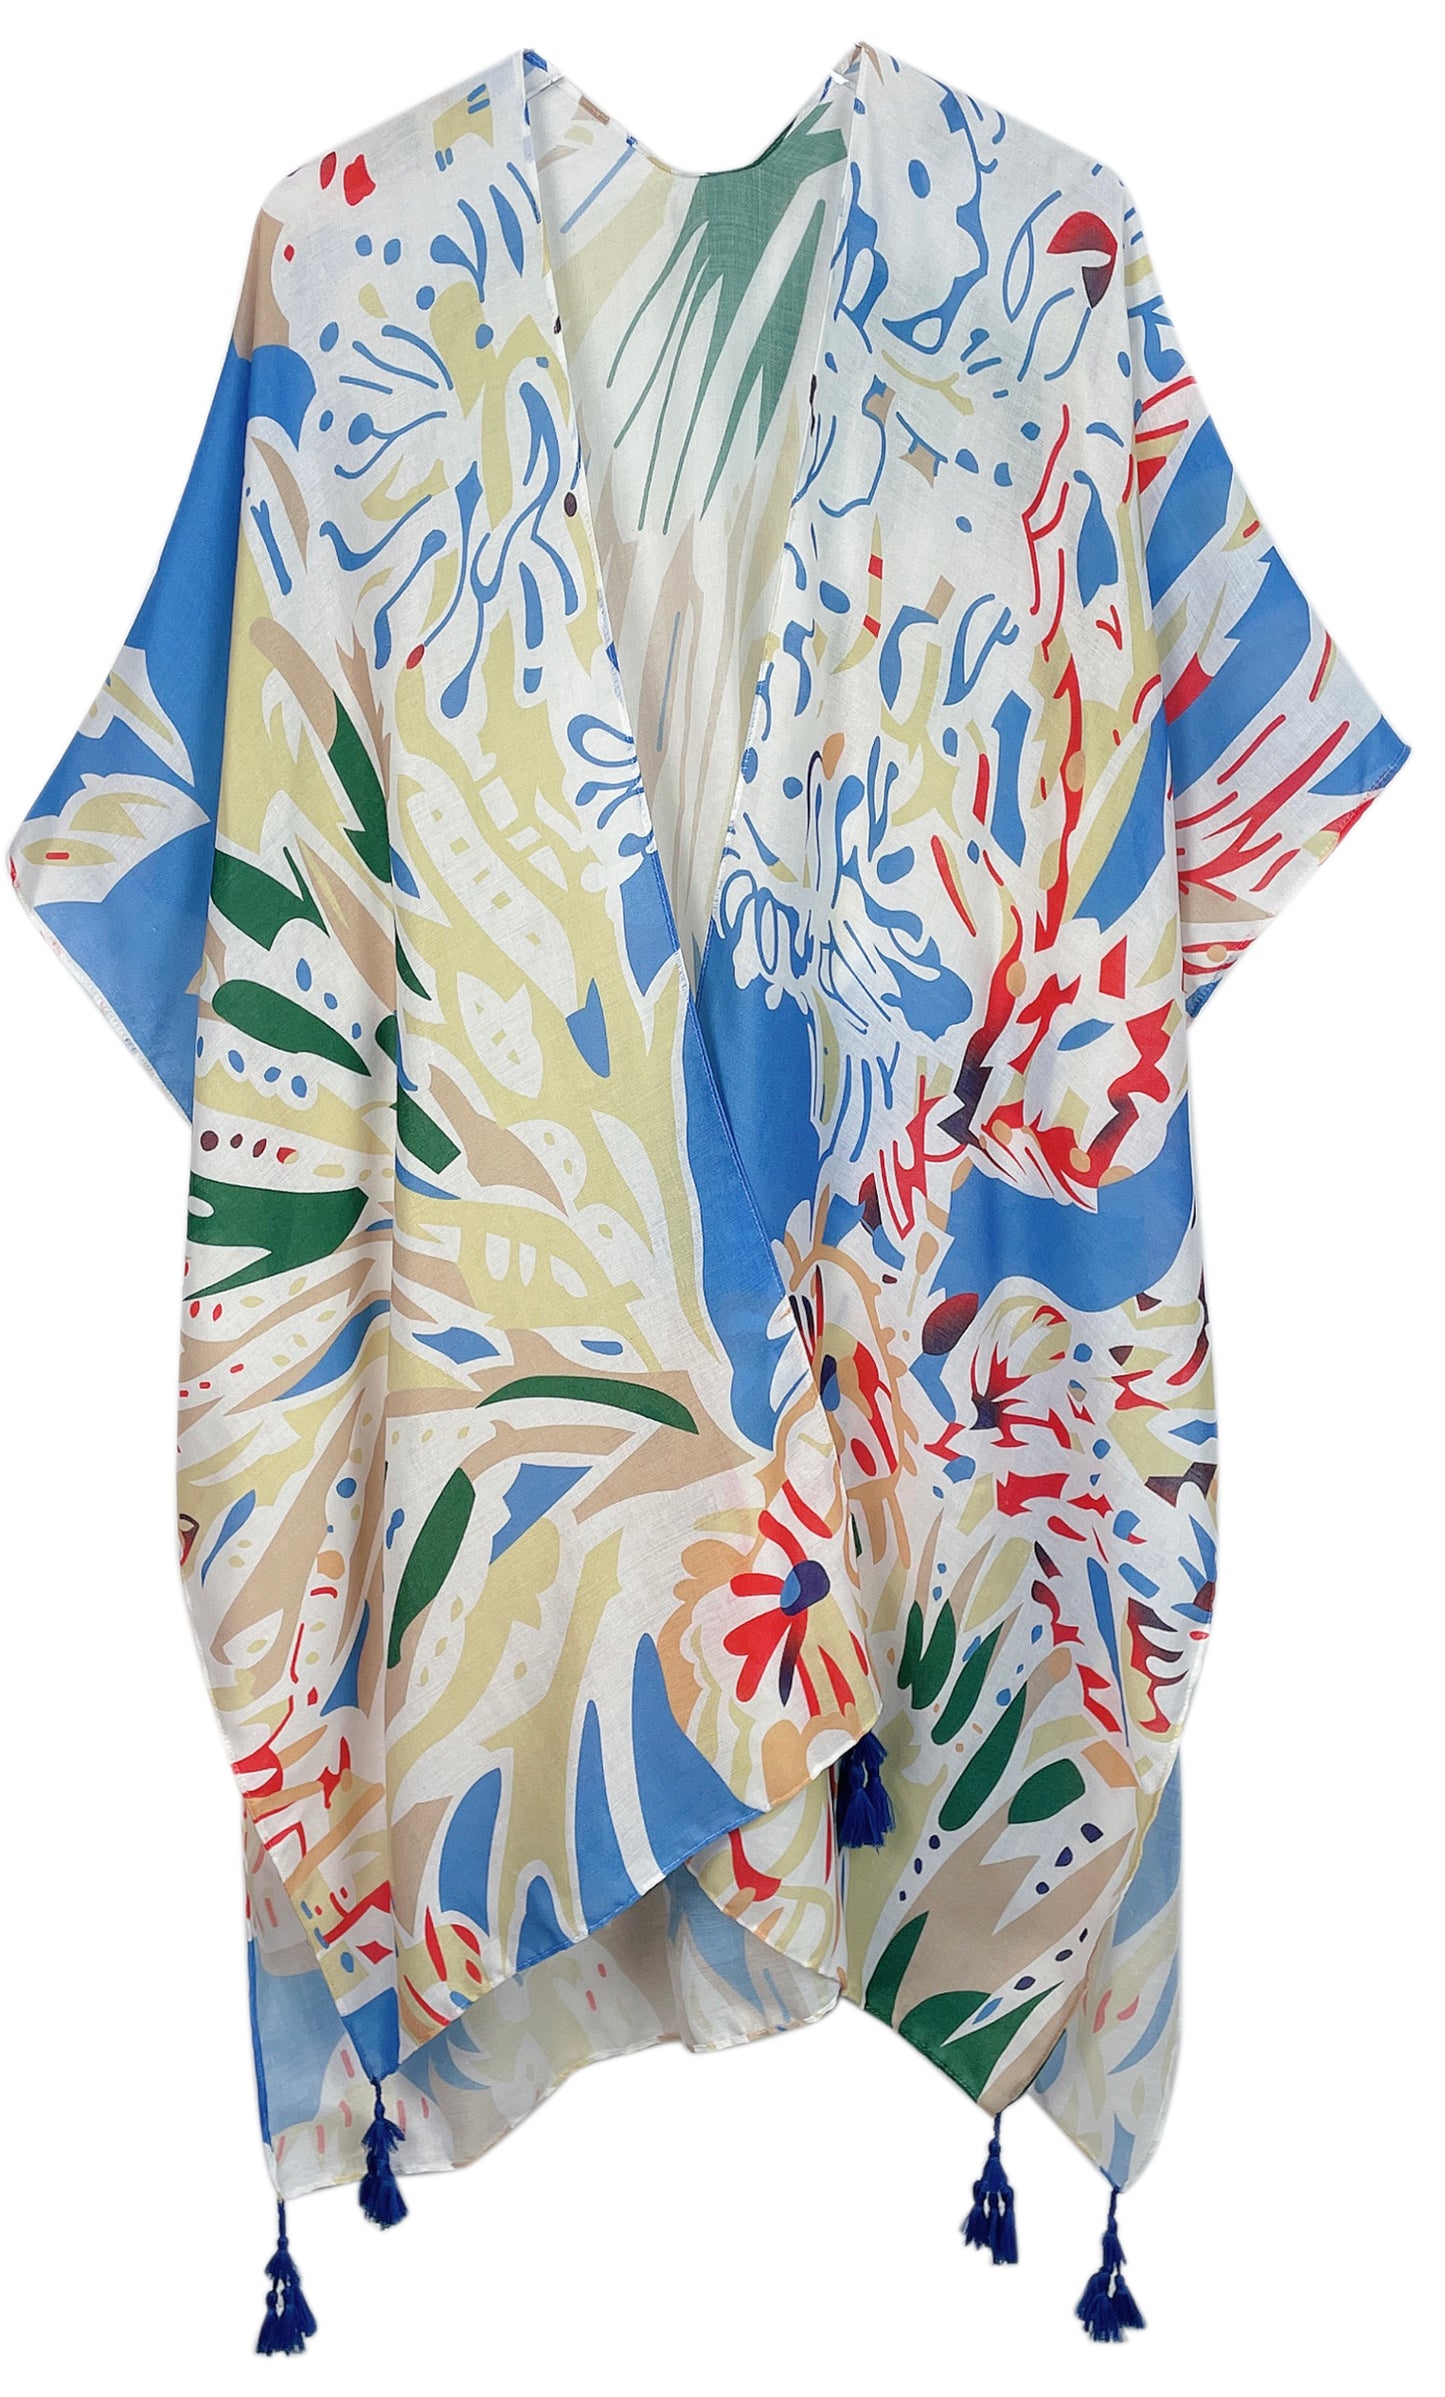 Floral Print Kimono